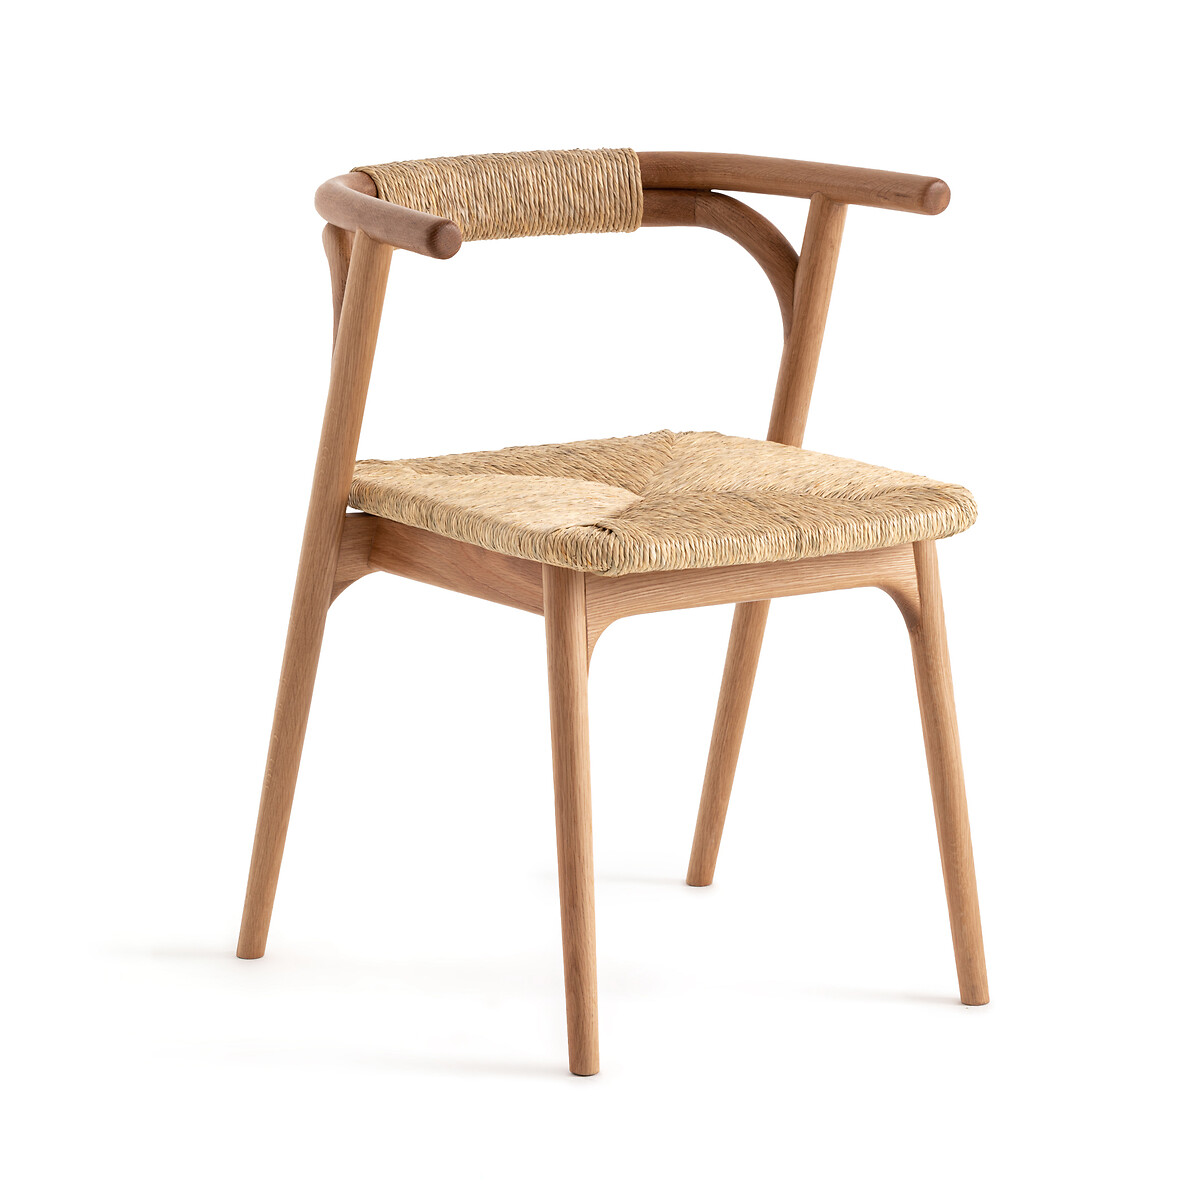 Кресло Для столовой из дуба и соломы Fermyo единый размер каштановый